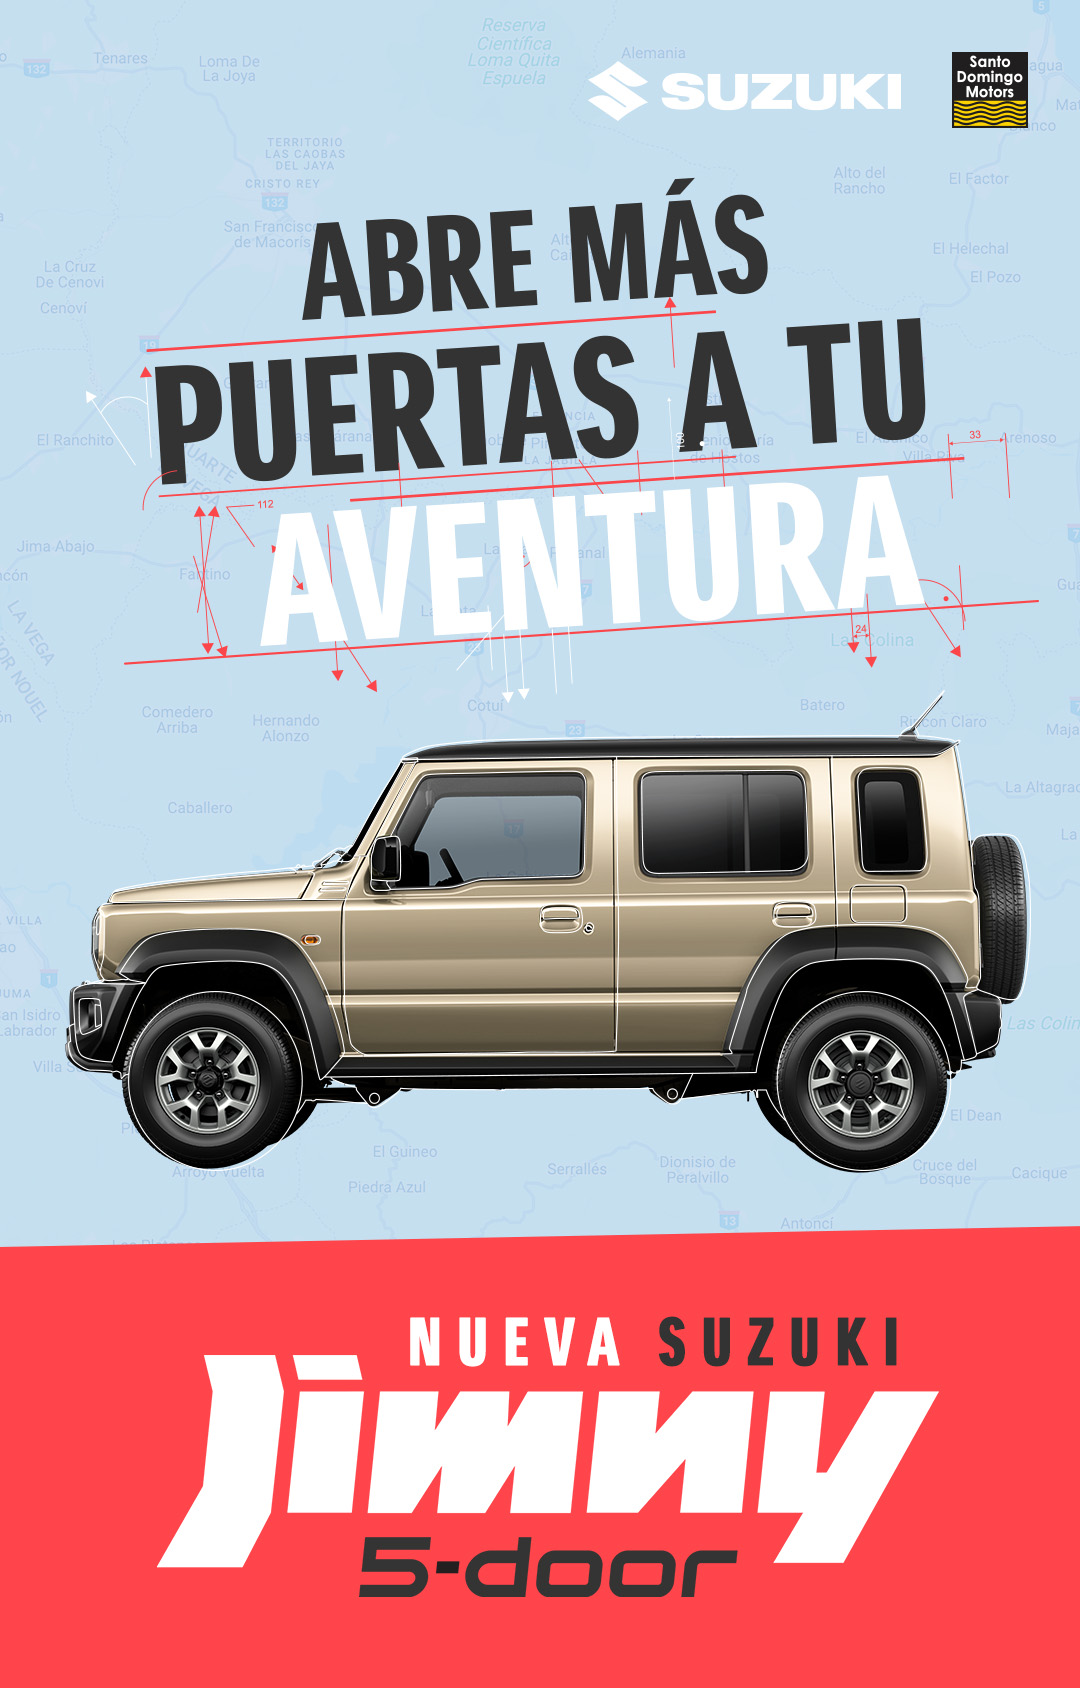 Suzuki Jimny: Abre más puertas a tu aventura